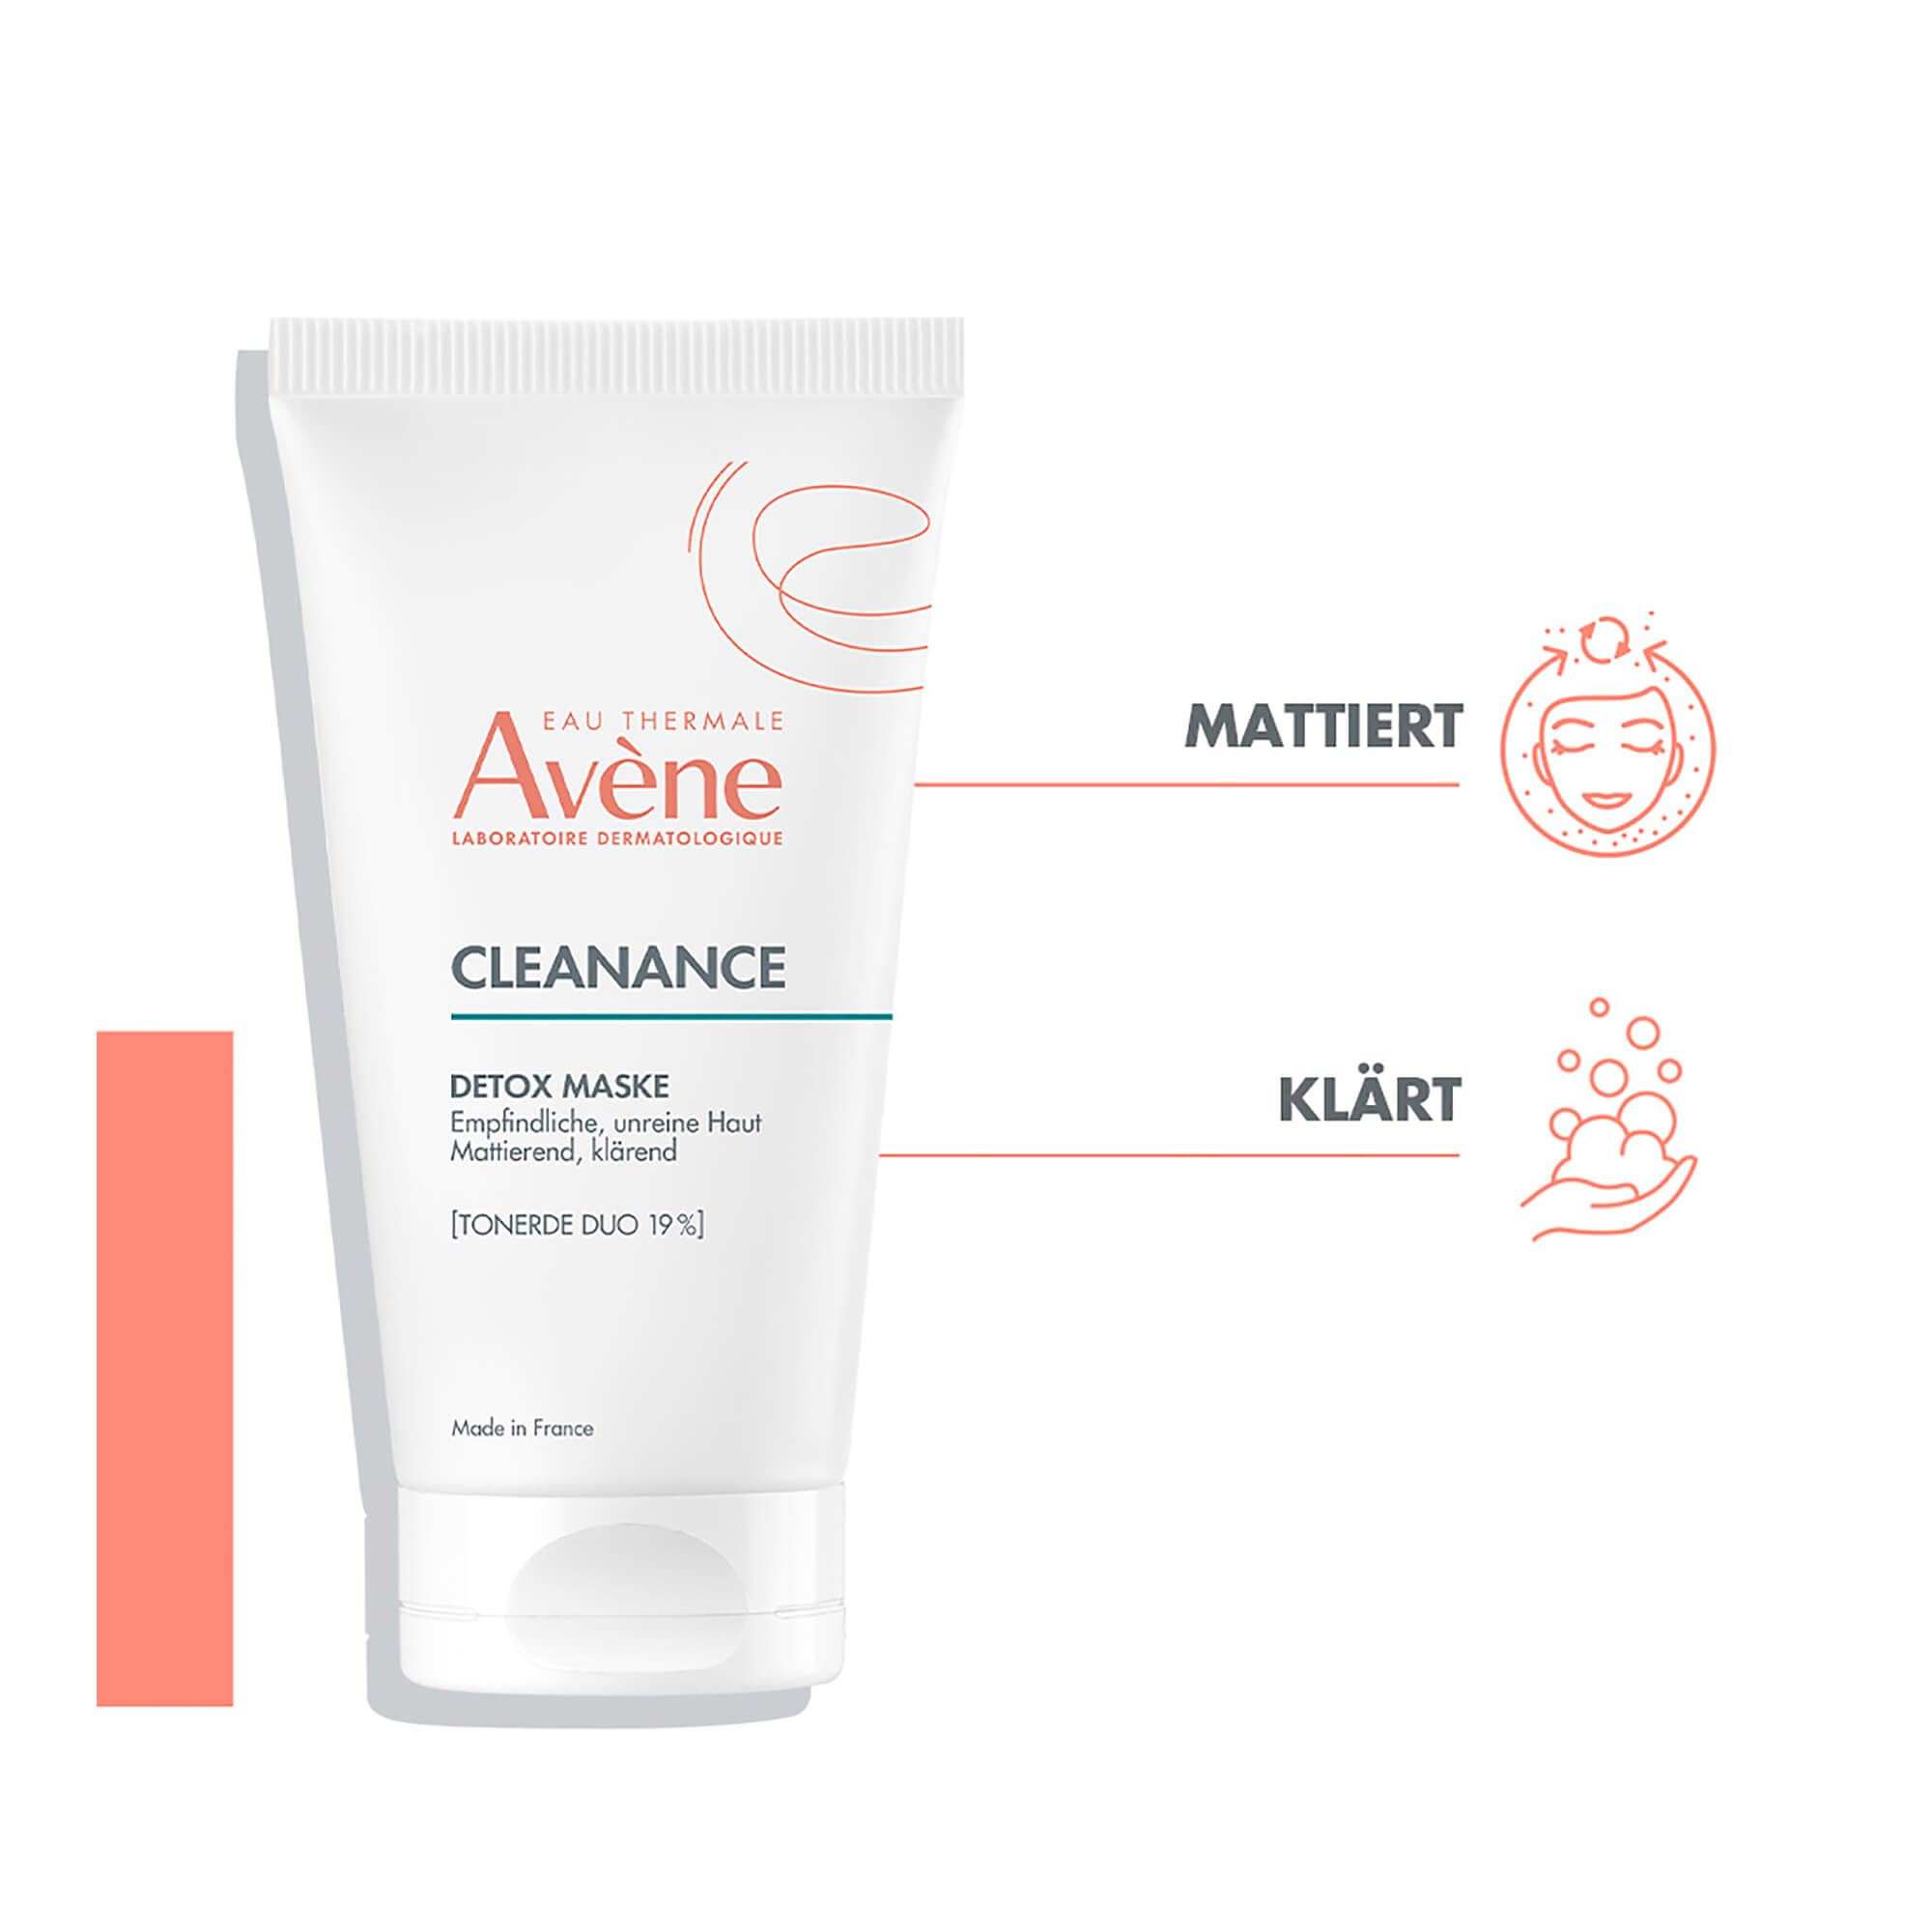 Avene Cleanance Detox-Maske Merkmale